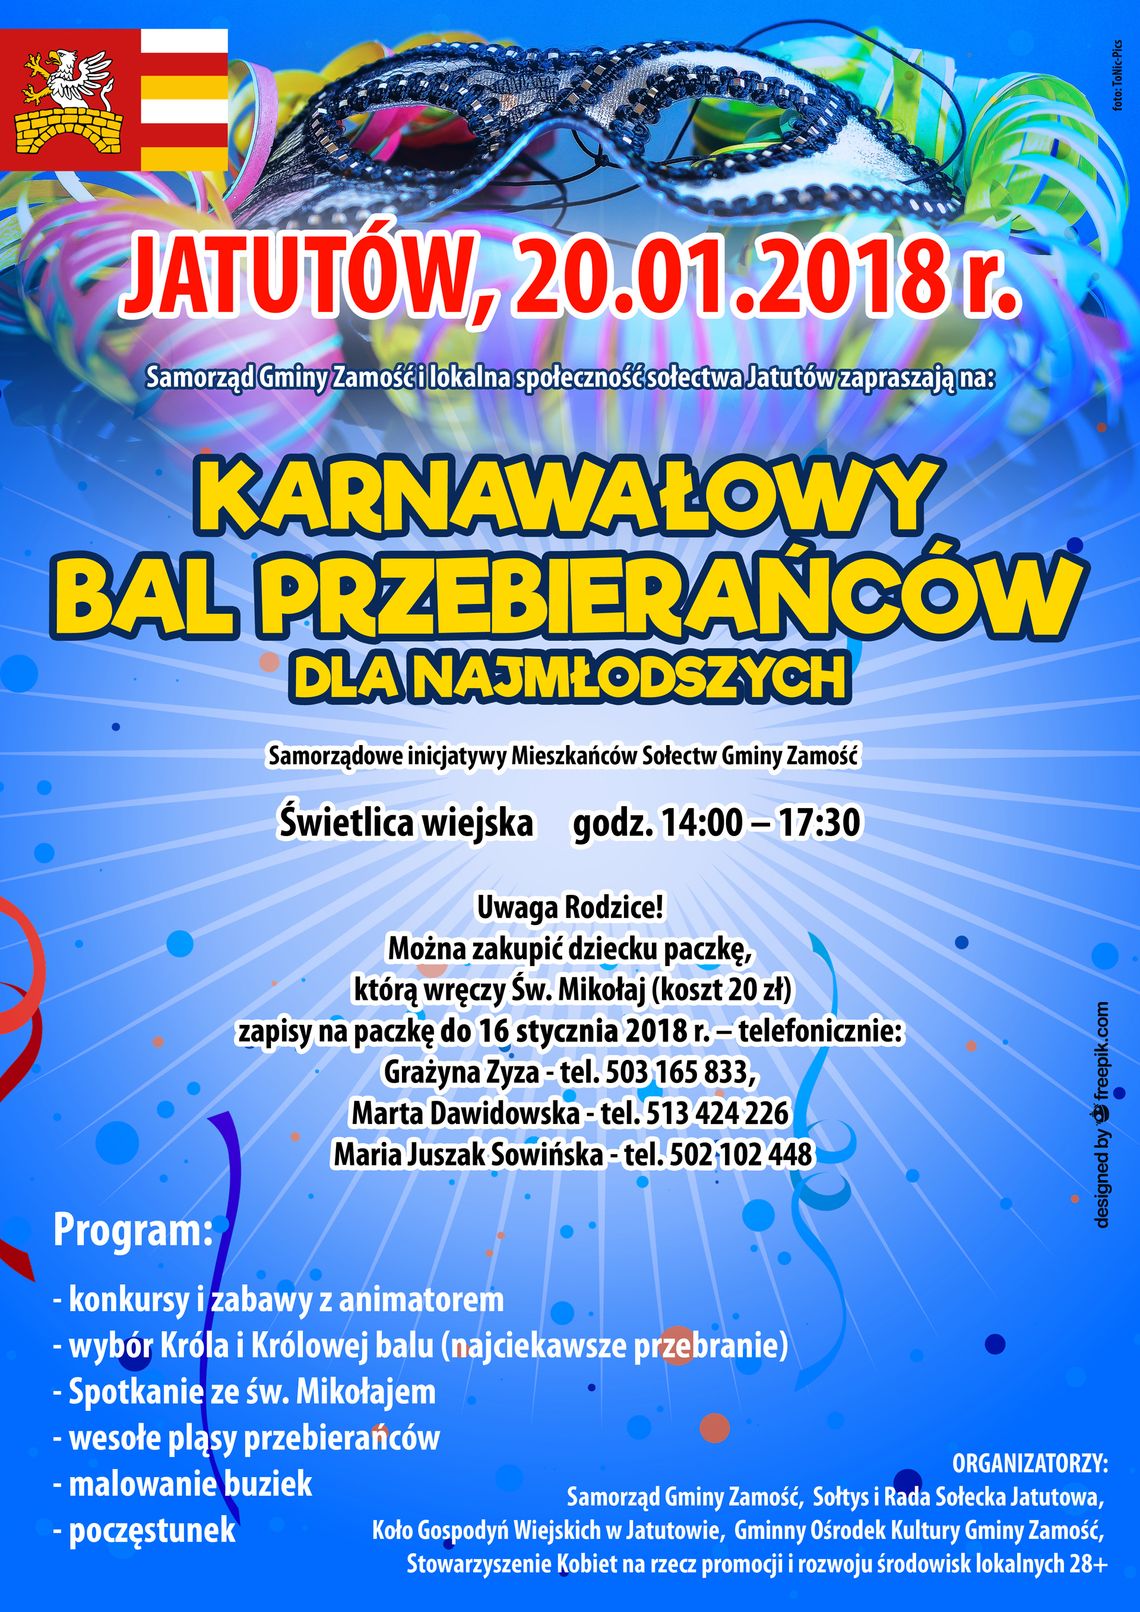 Gm. Zamość: Karnawałowy bal dla dzieci w Jatutowie